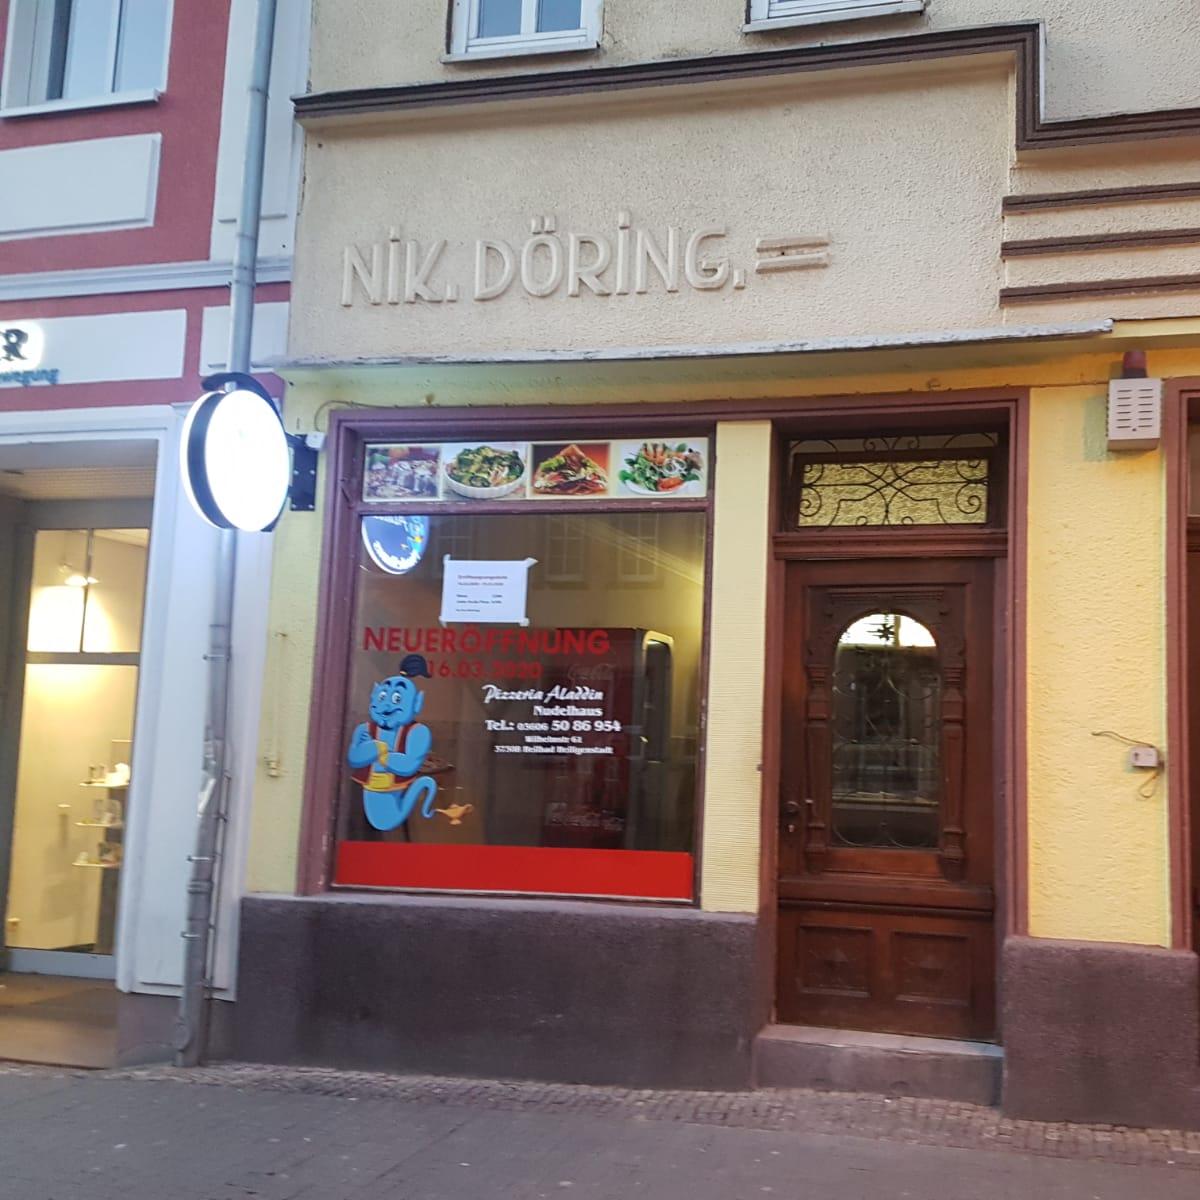 Restaurant "Pizzeria Aladdin Nudelhaus" in Heilbad Heiligenstadt